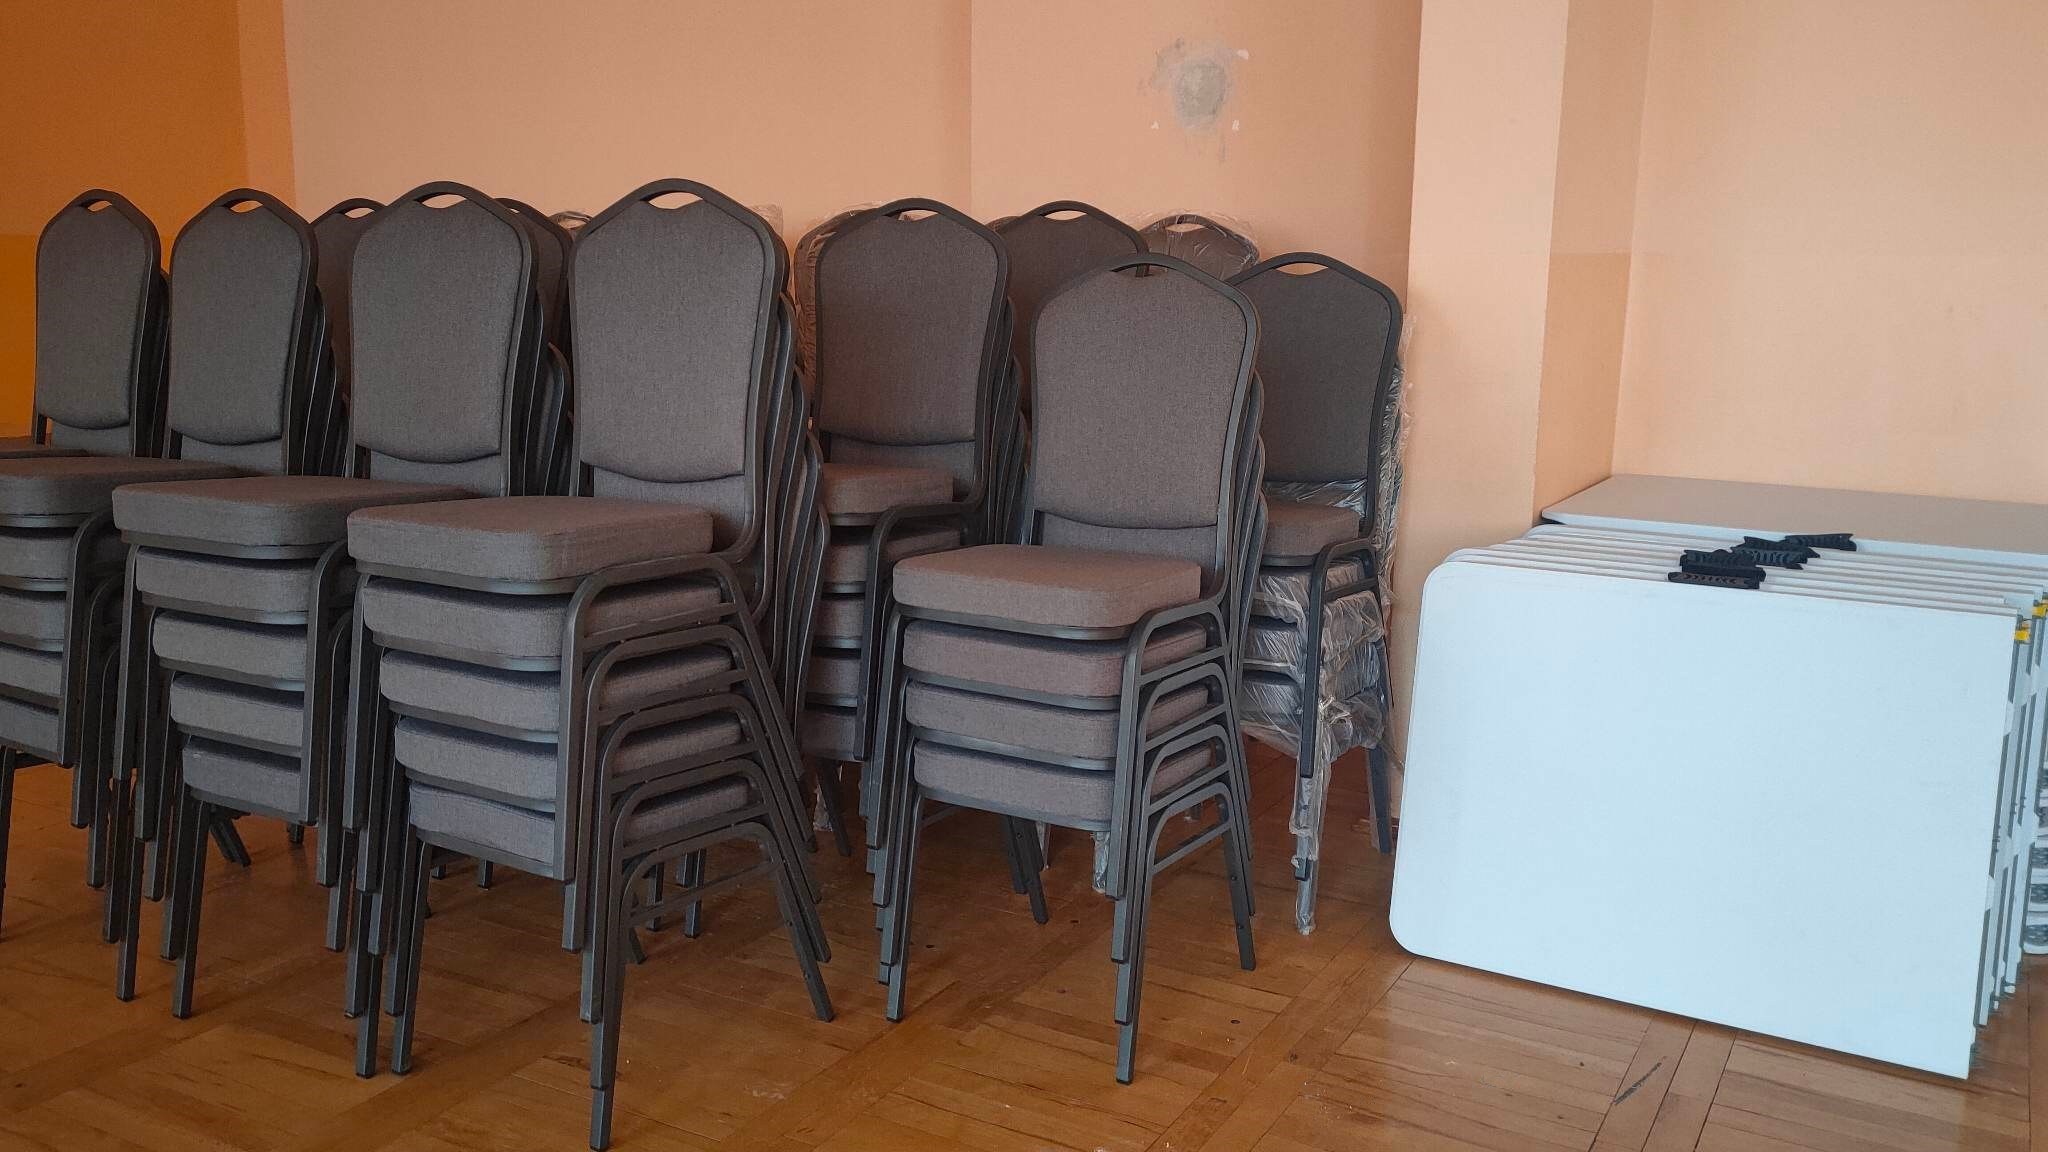 zdjęcie przedstawia szare krzesła bankietowe ustawione jedno na drugim w trzech rzędach pod ścianą